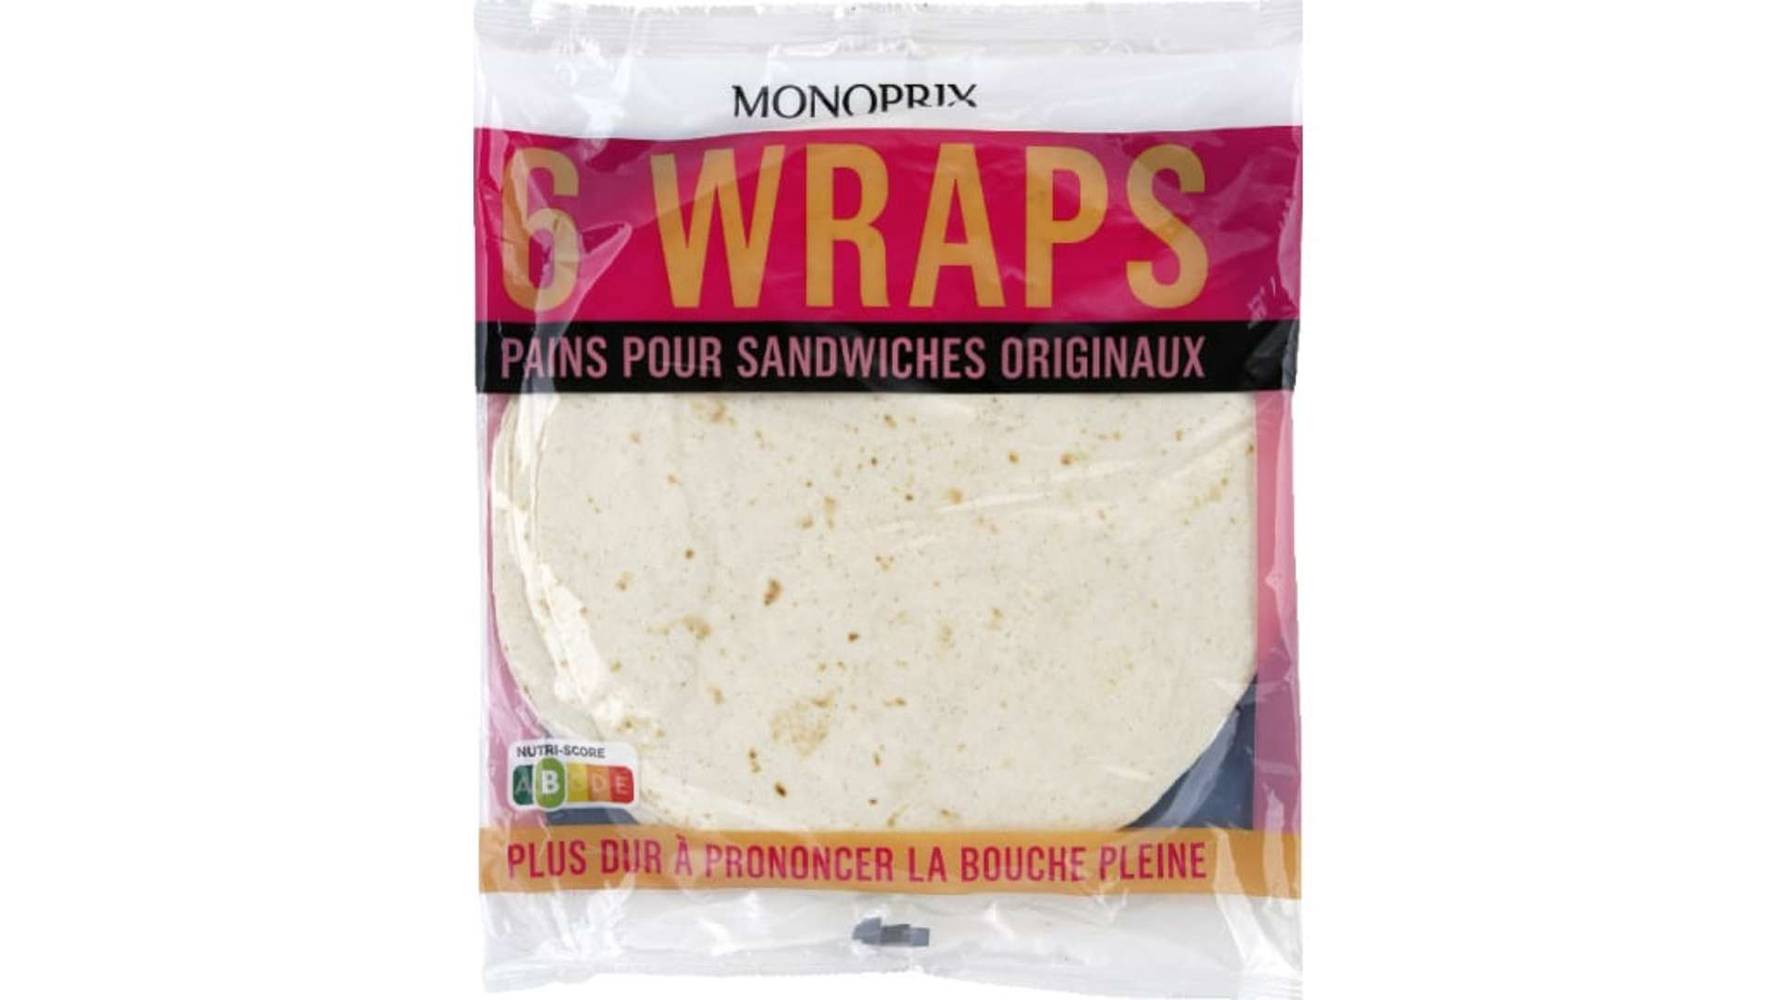 Monoprix Wraps pains pour sandwiches originaux Le paquet de 6, 370g